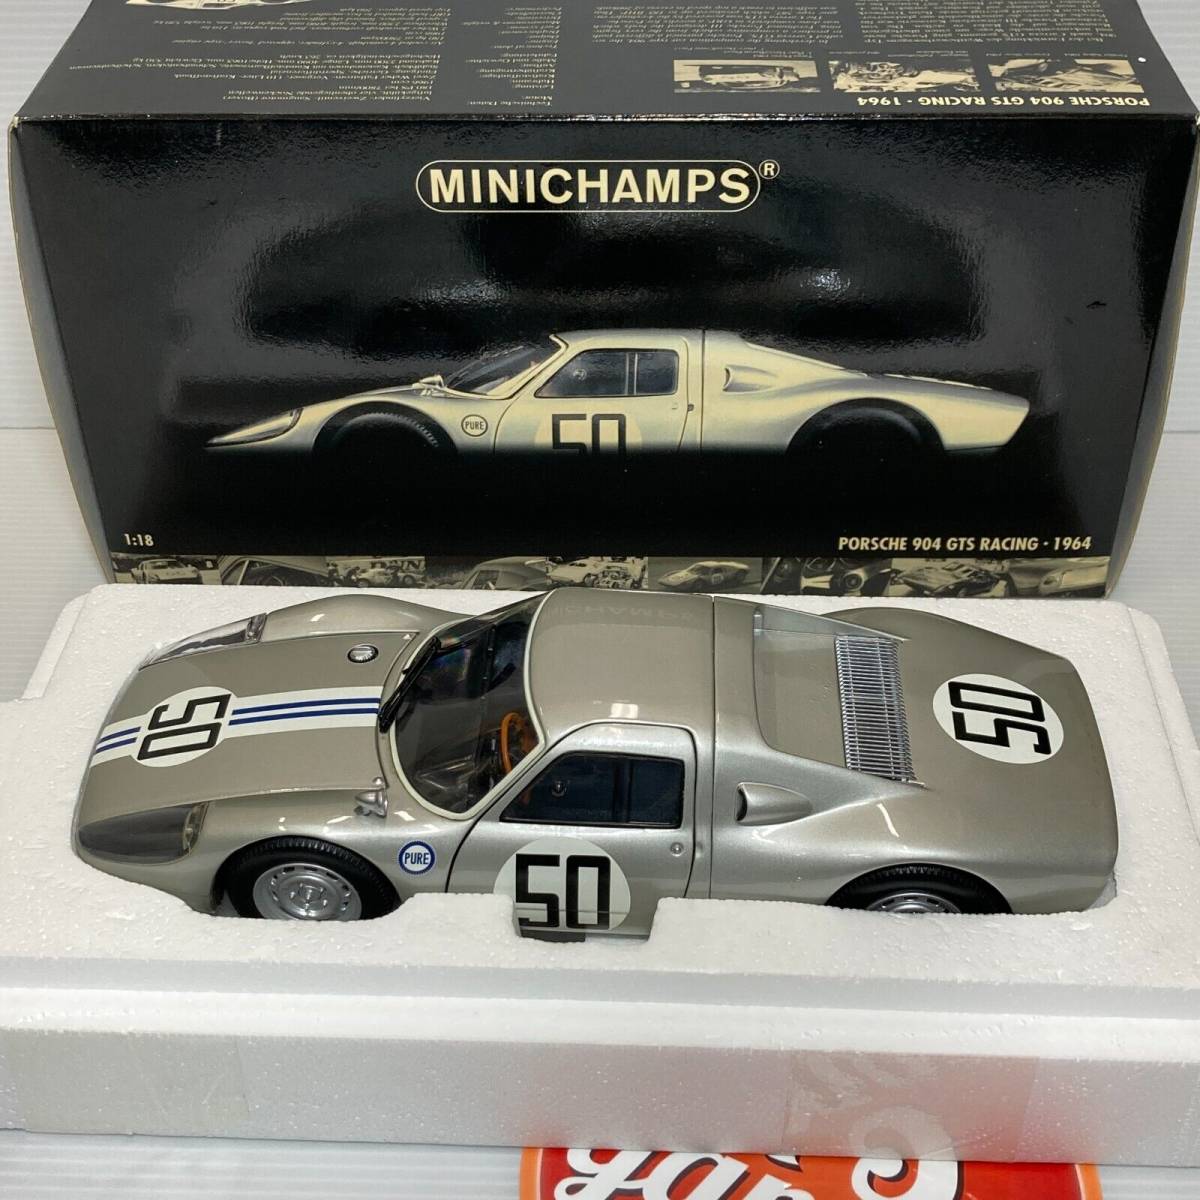 1/18 ミニチャンプス ポルシェ 904 GTS レーシング Racing 1964 #50 シルバー Silver 180646750 MINICHAMPS